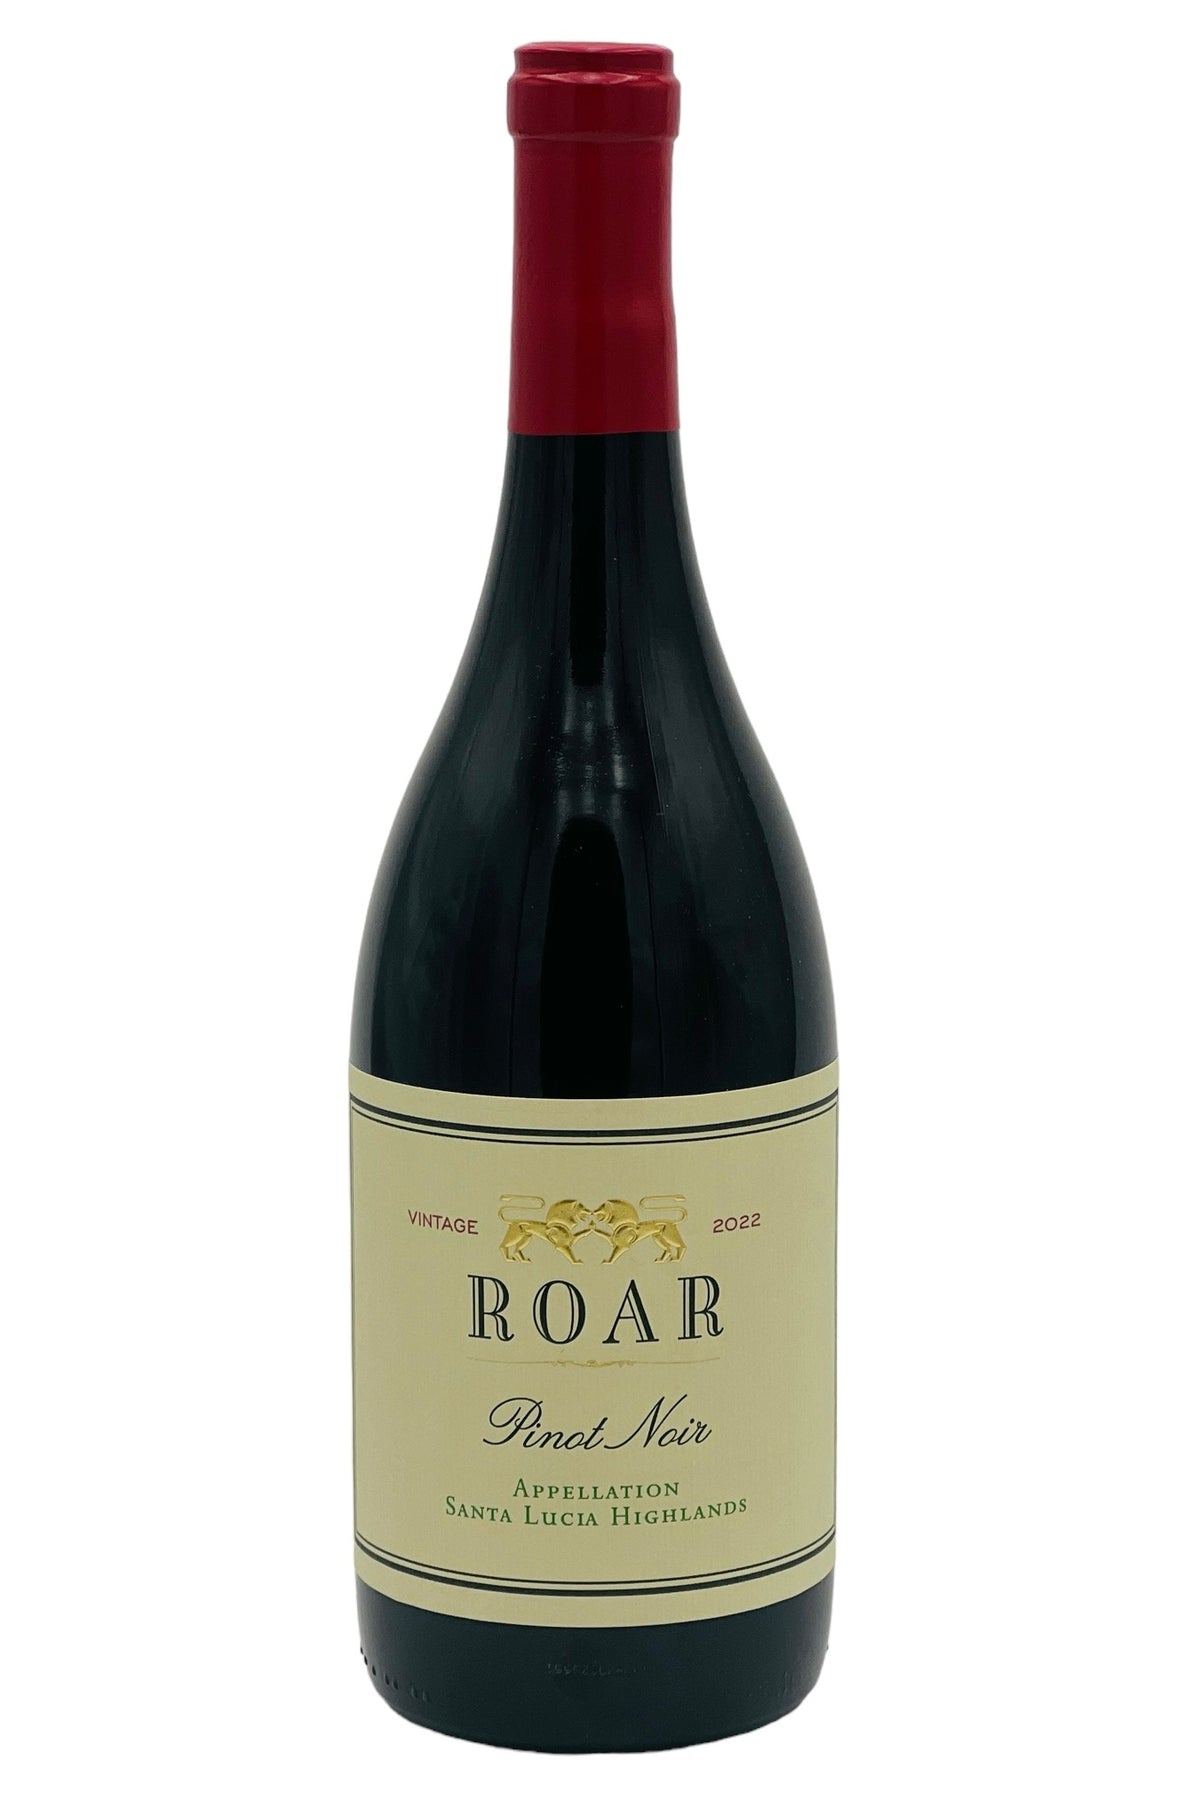 Roar 2022 Pinot Noir Santa Lucia Highlands